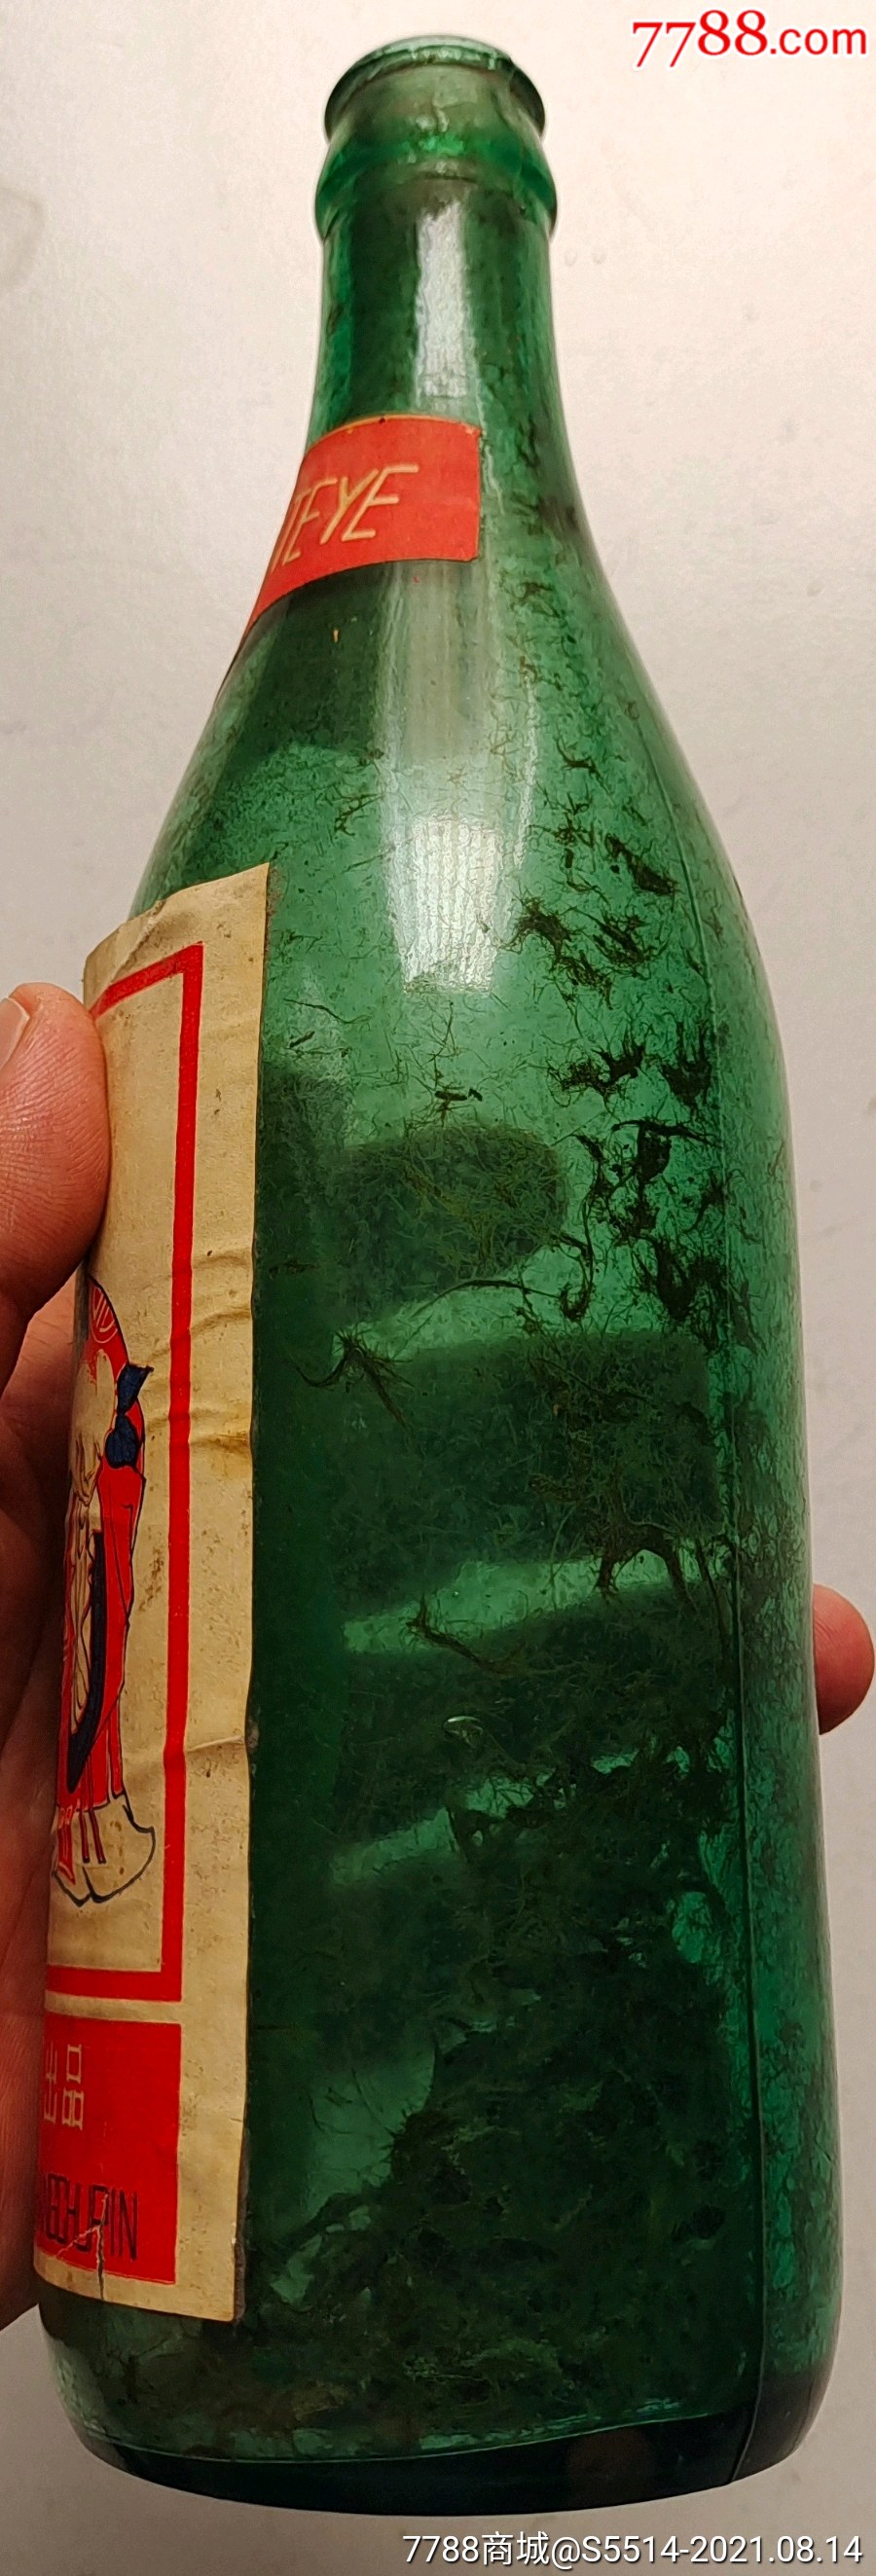 少见80年代香槟特液酒瓶(汾阳县饮料厂)!